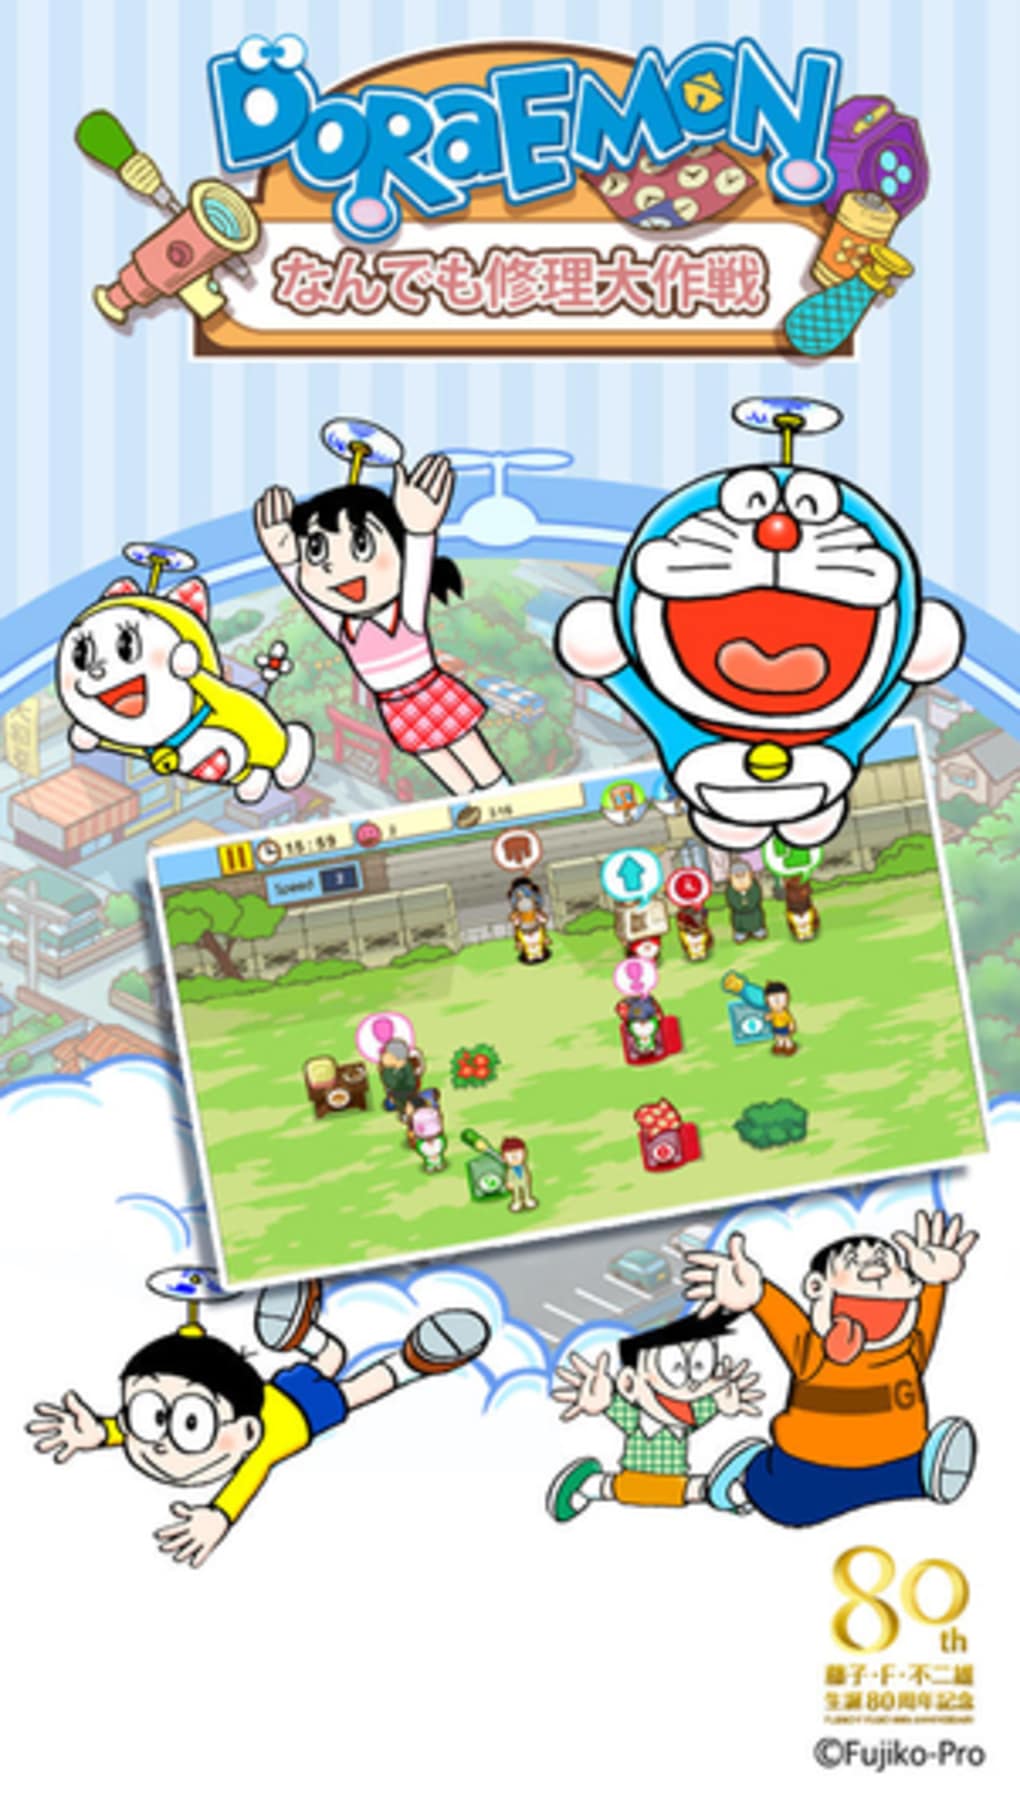 Doraemon Repair Shop for iPhone - Download